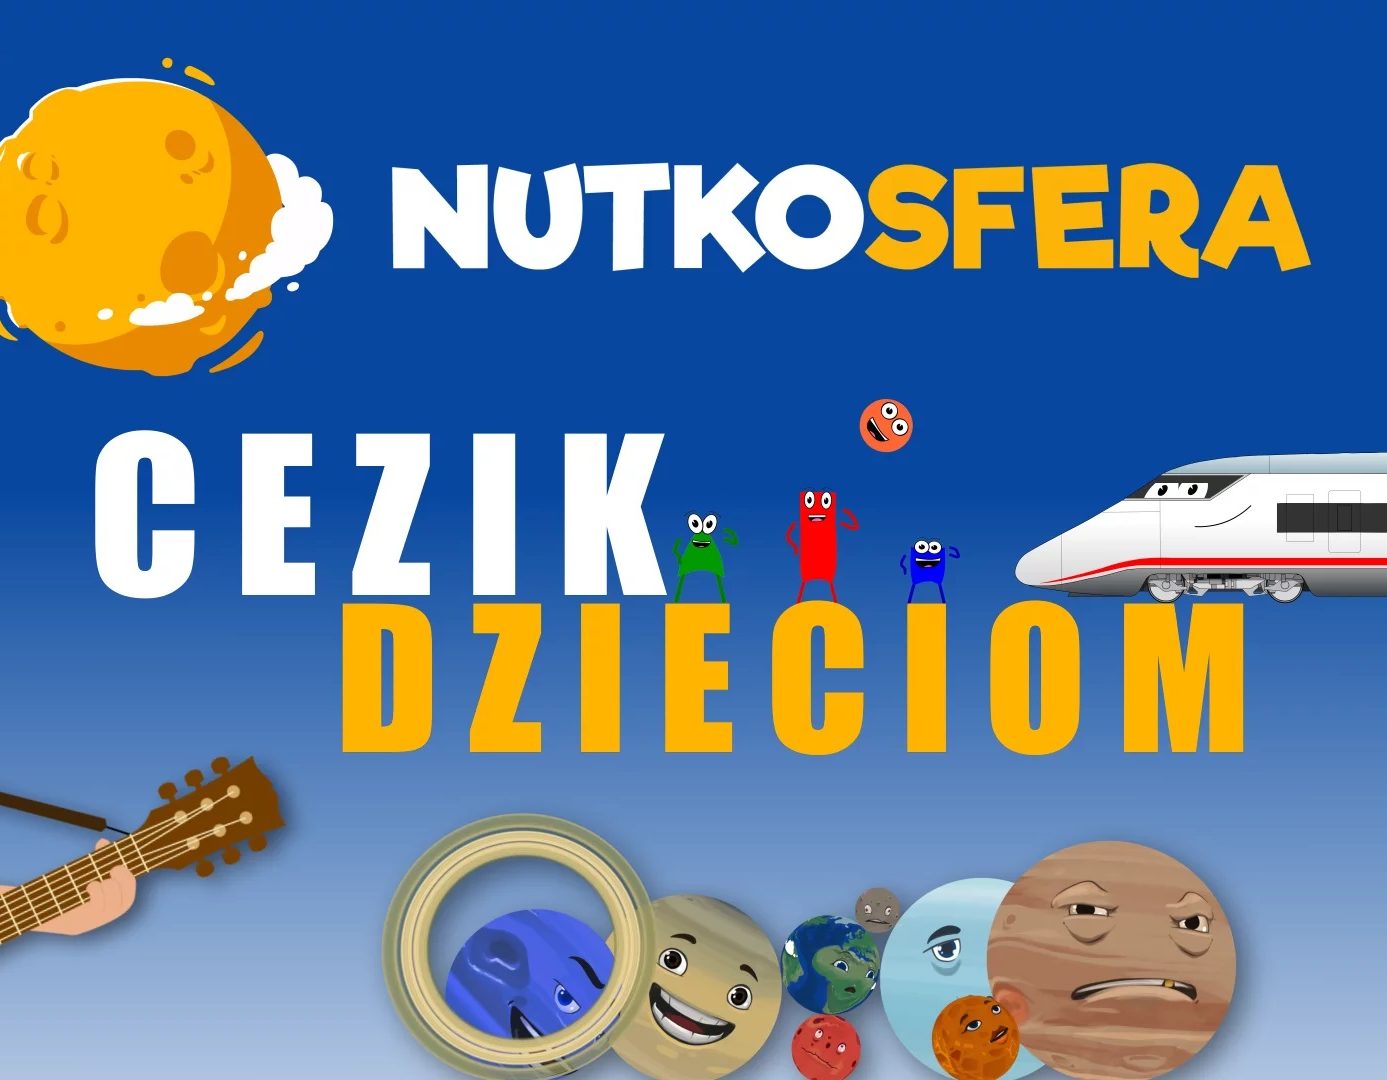 NutkoSfera – CeZik dzieciom. Koncert piosenek dla dzieci